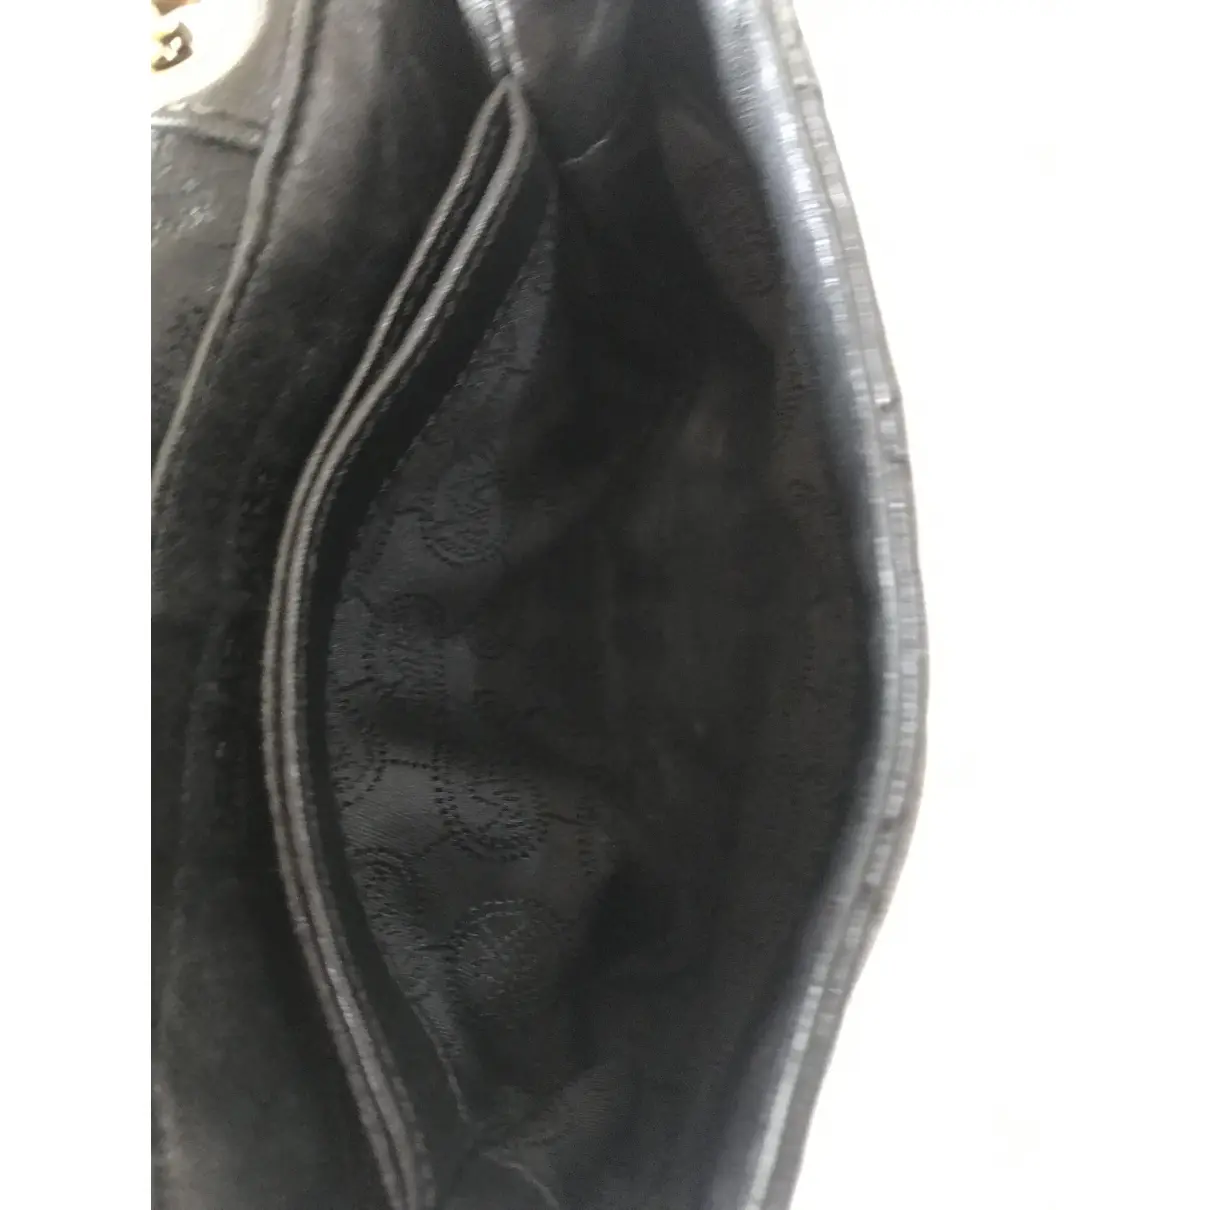 Sloan leather bag Michael Kors